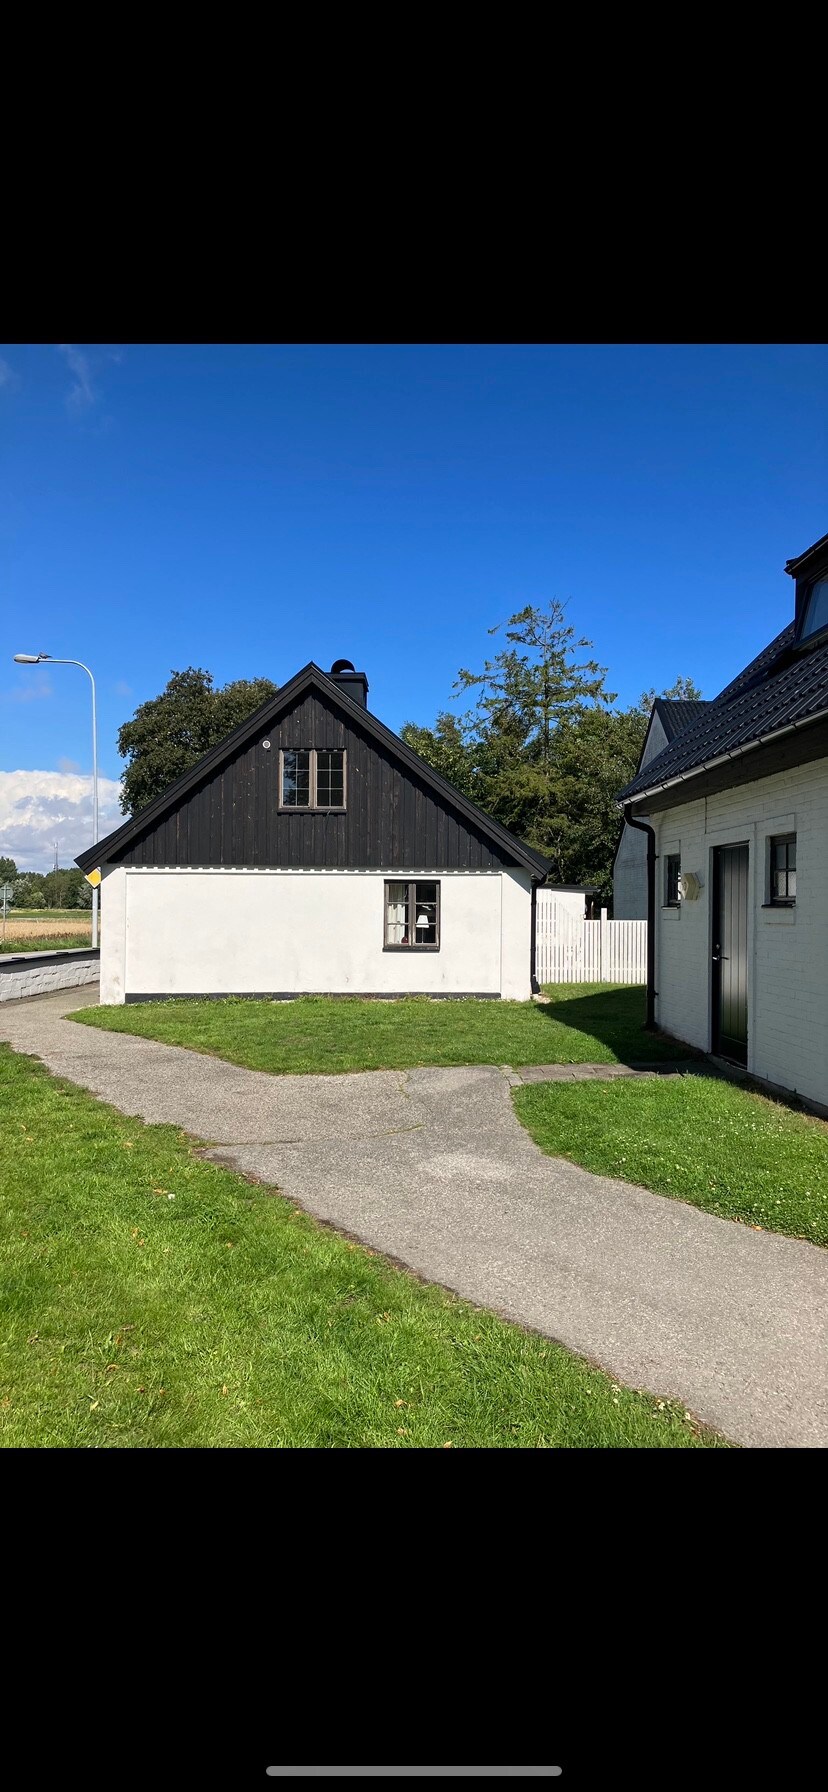 Eget unikt hus vid havet Smygehuk Skåne v.31